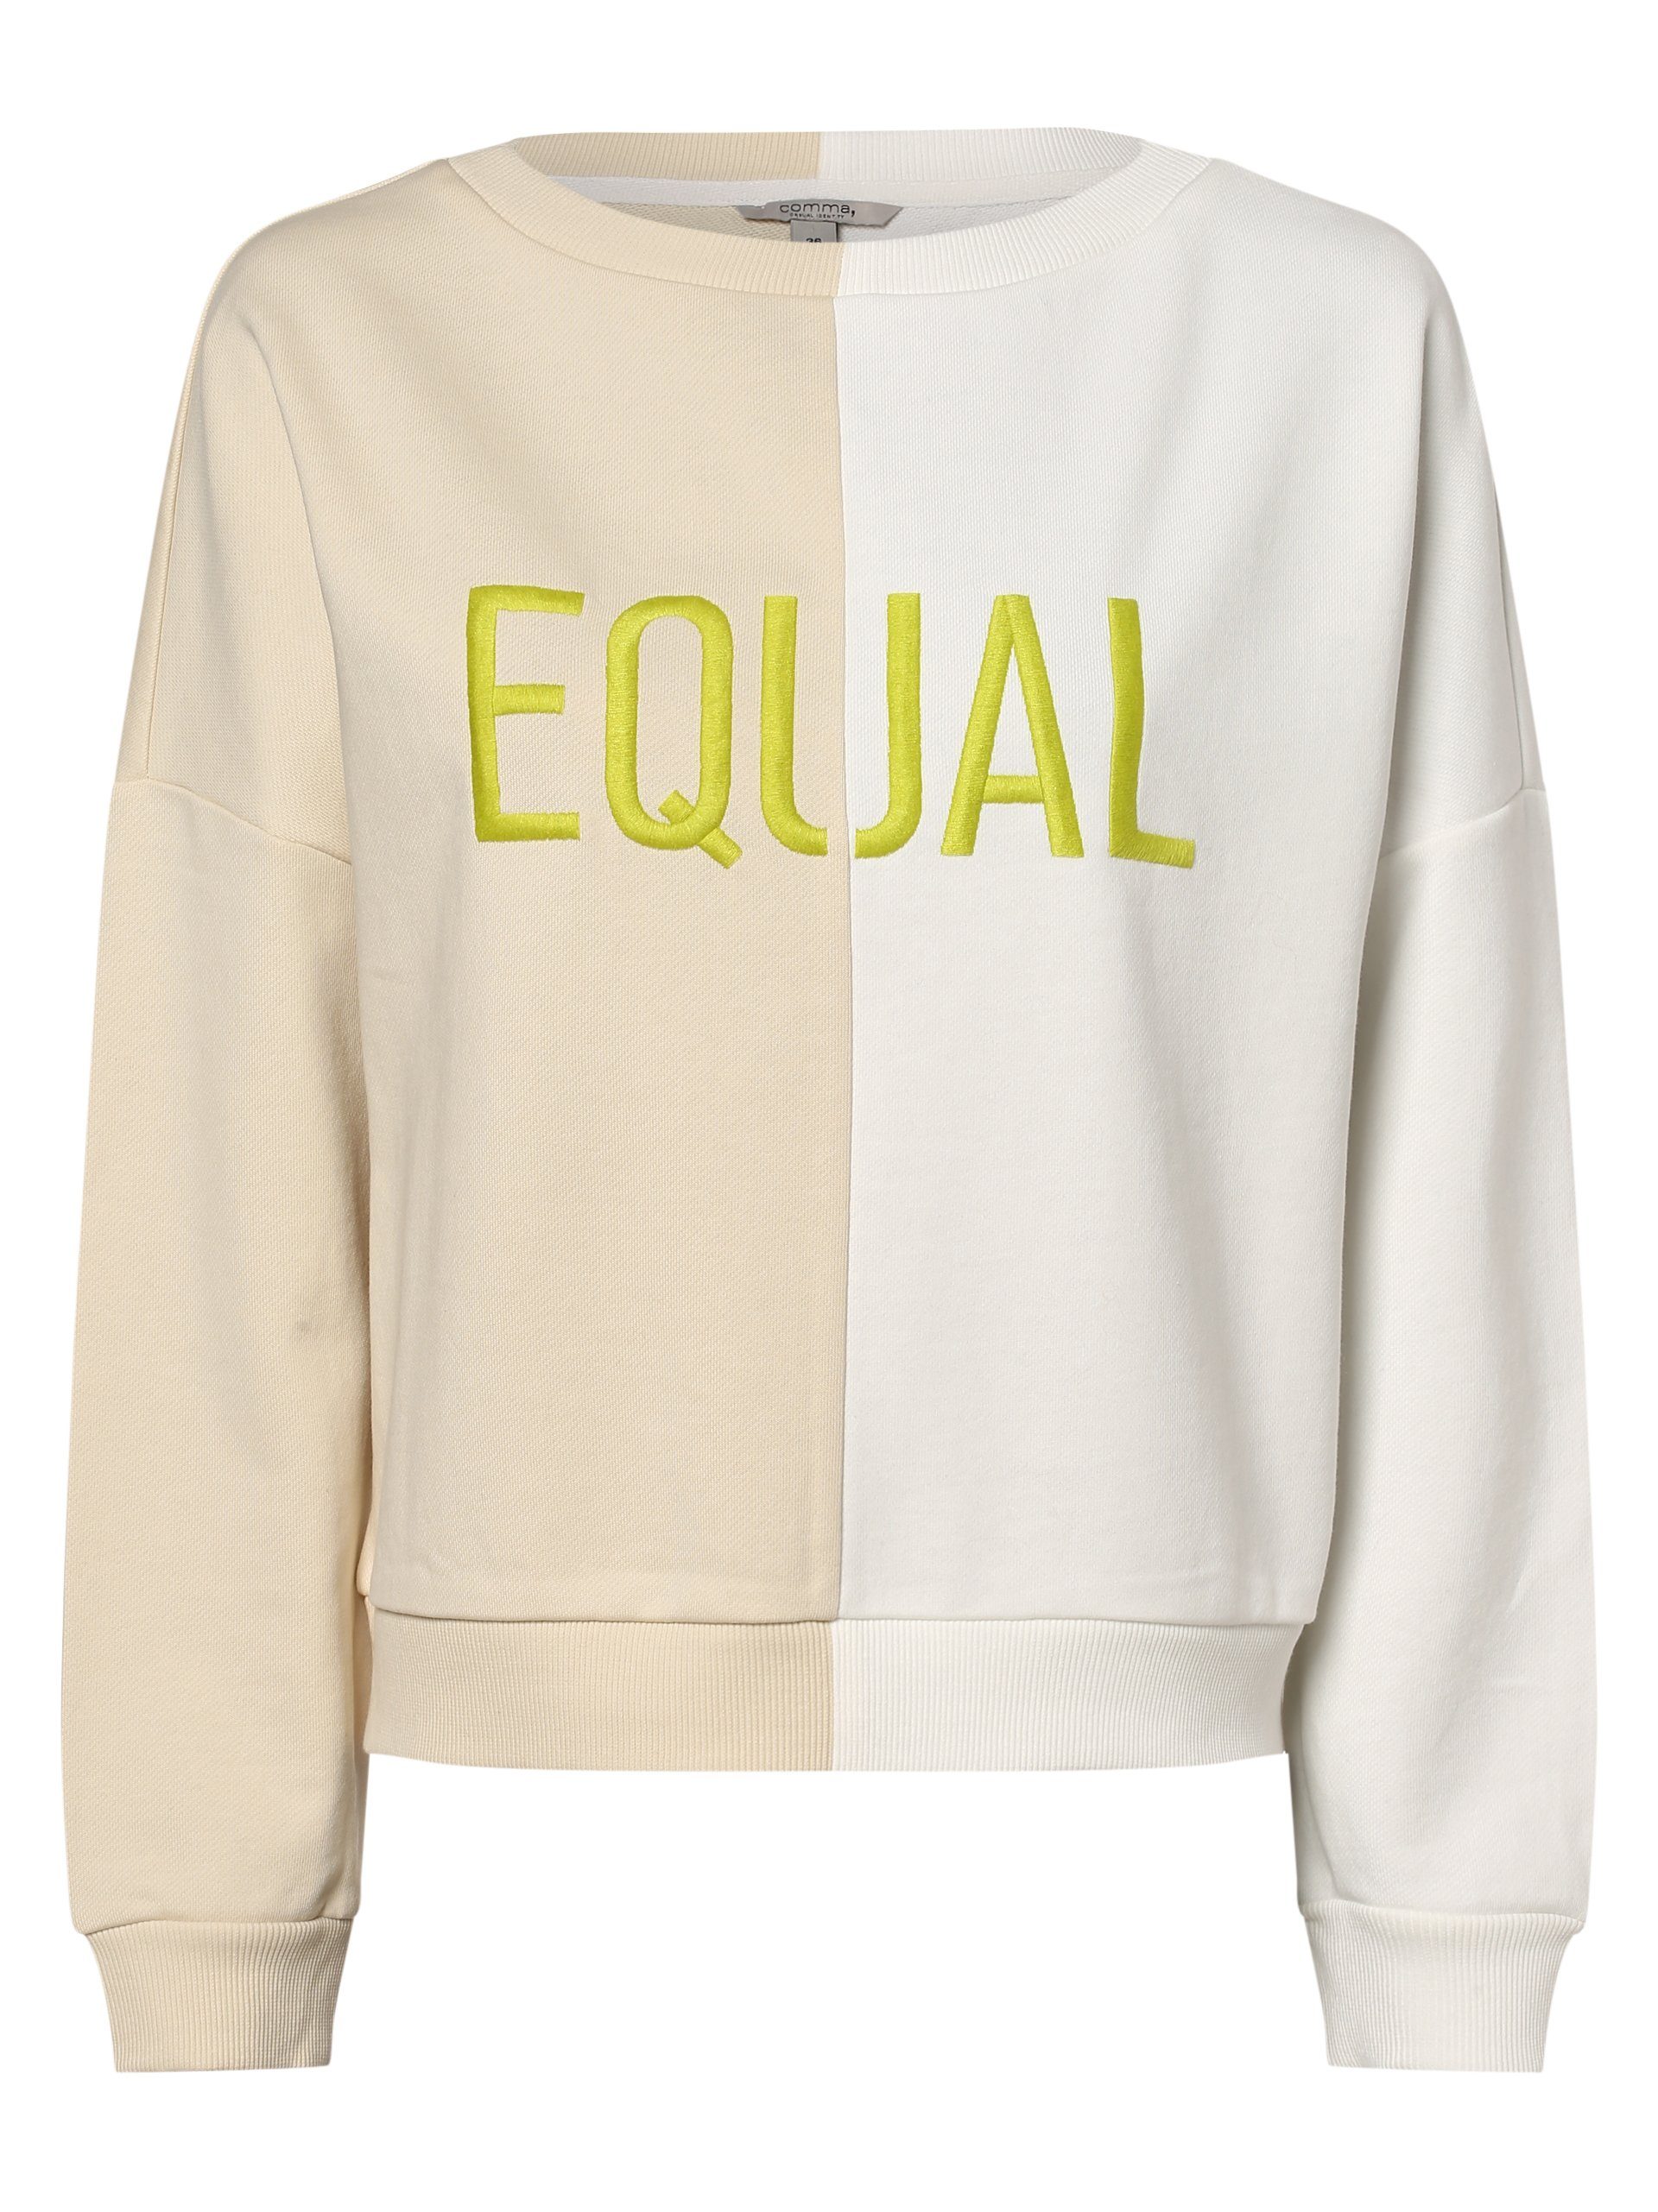 Comma Sweatshirt online kaufen | OTTO